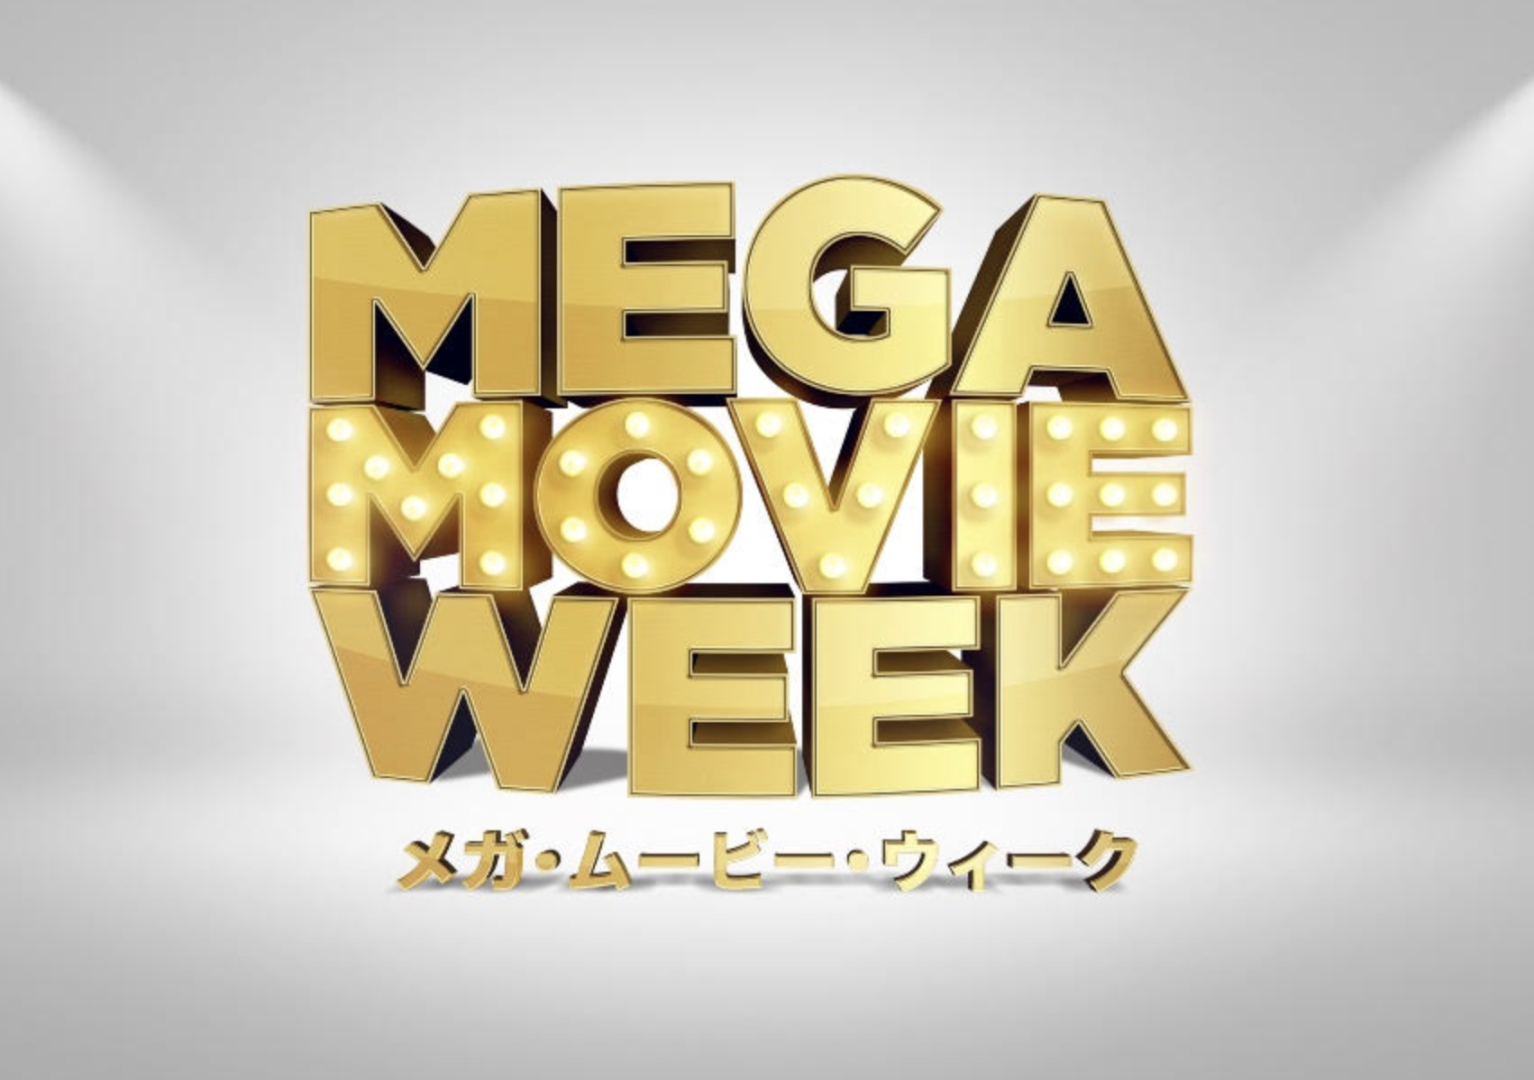 Mega Movie Week Debuts in Japan with Unprecedented Cross-Industry Campaign